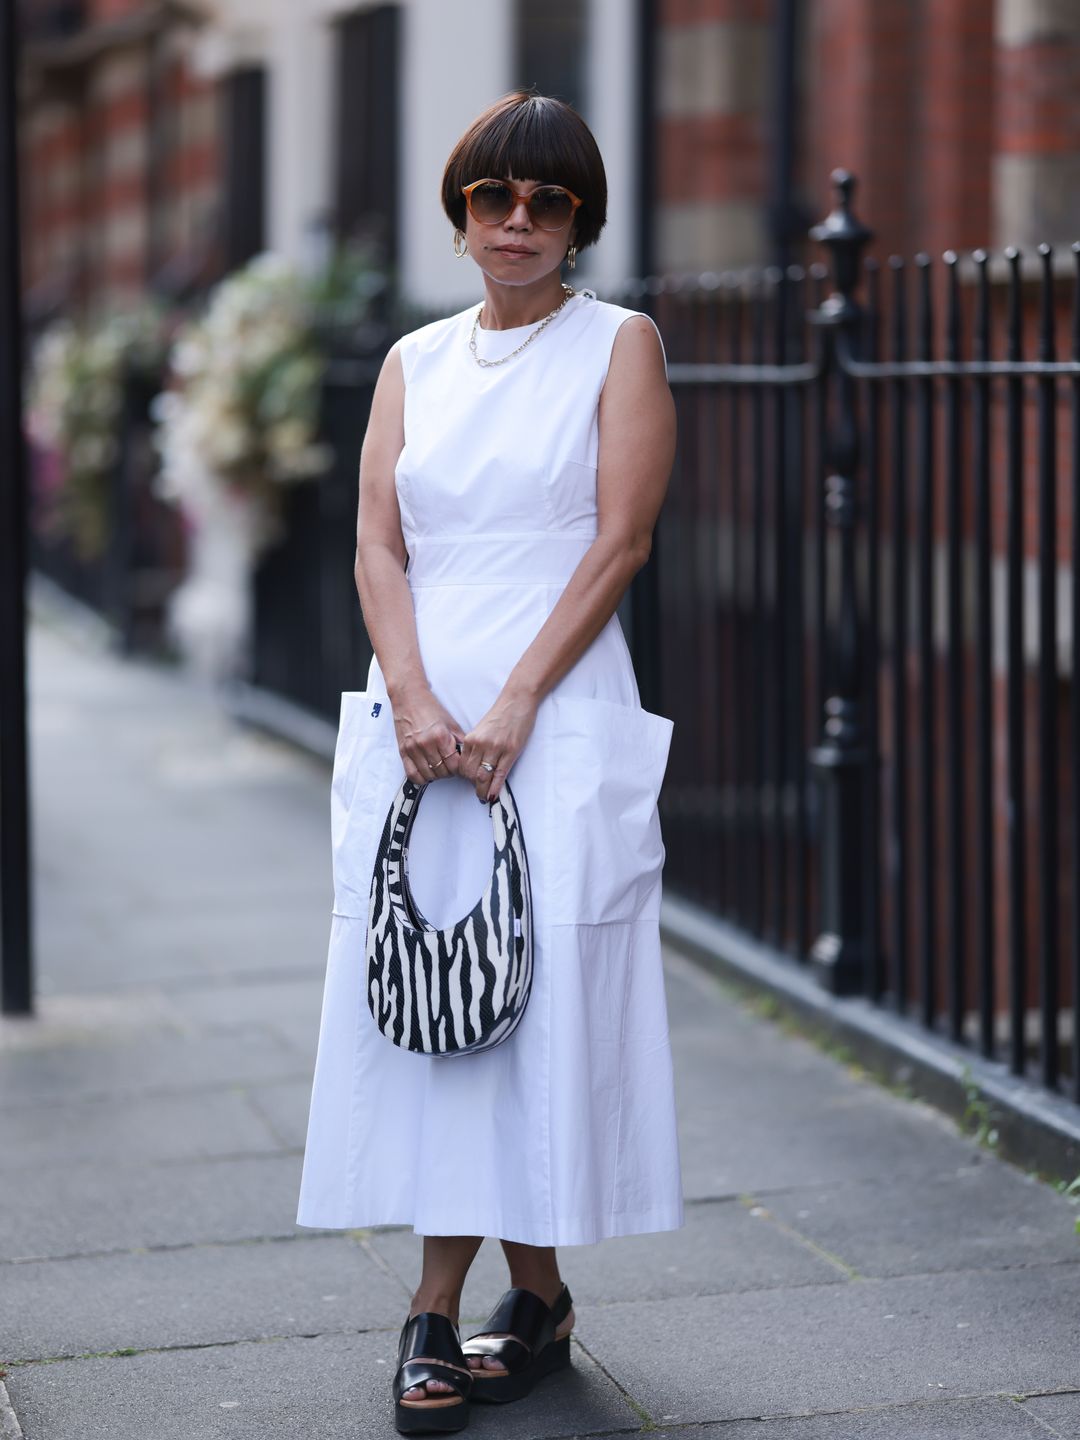 Woman wears a plain white dress with a zebra print bag